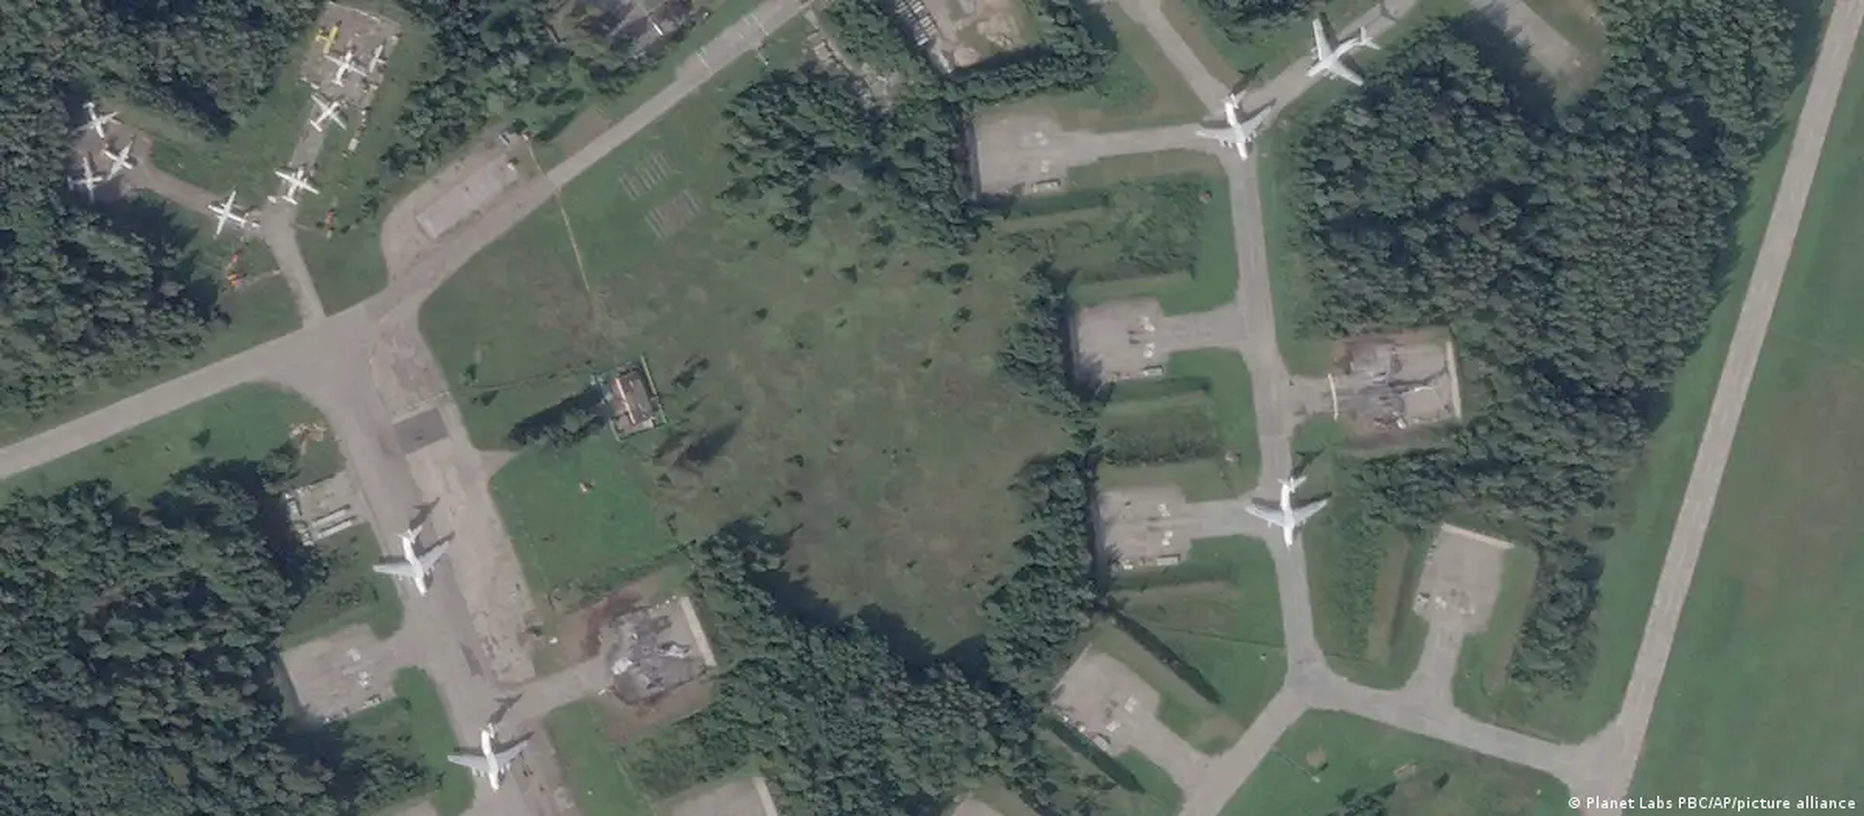 Псковский аэропорт (на спутниковом снимке от 31 августа), по всей видимости, был поражен ракетой украинского производства